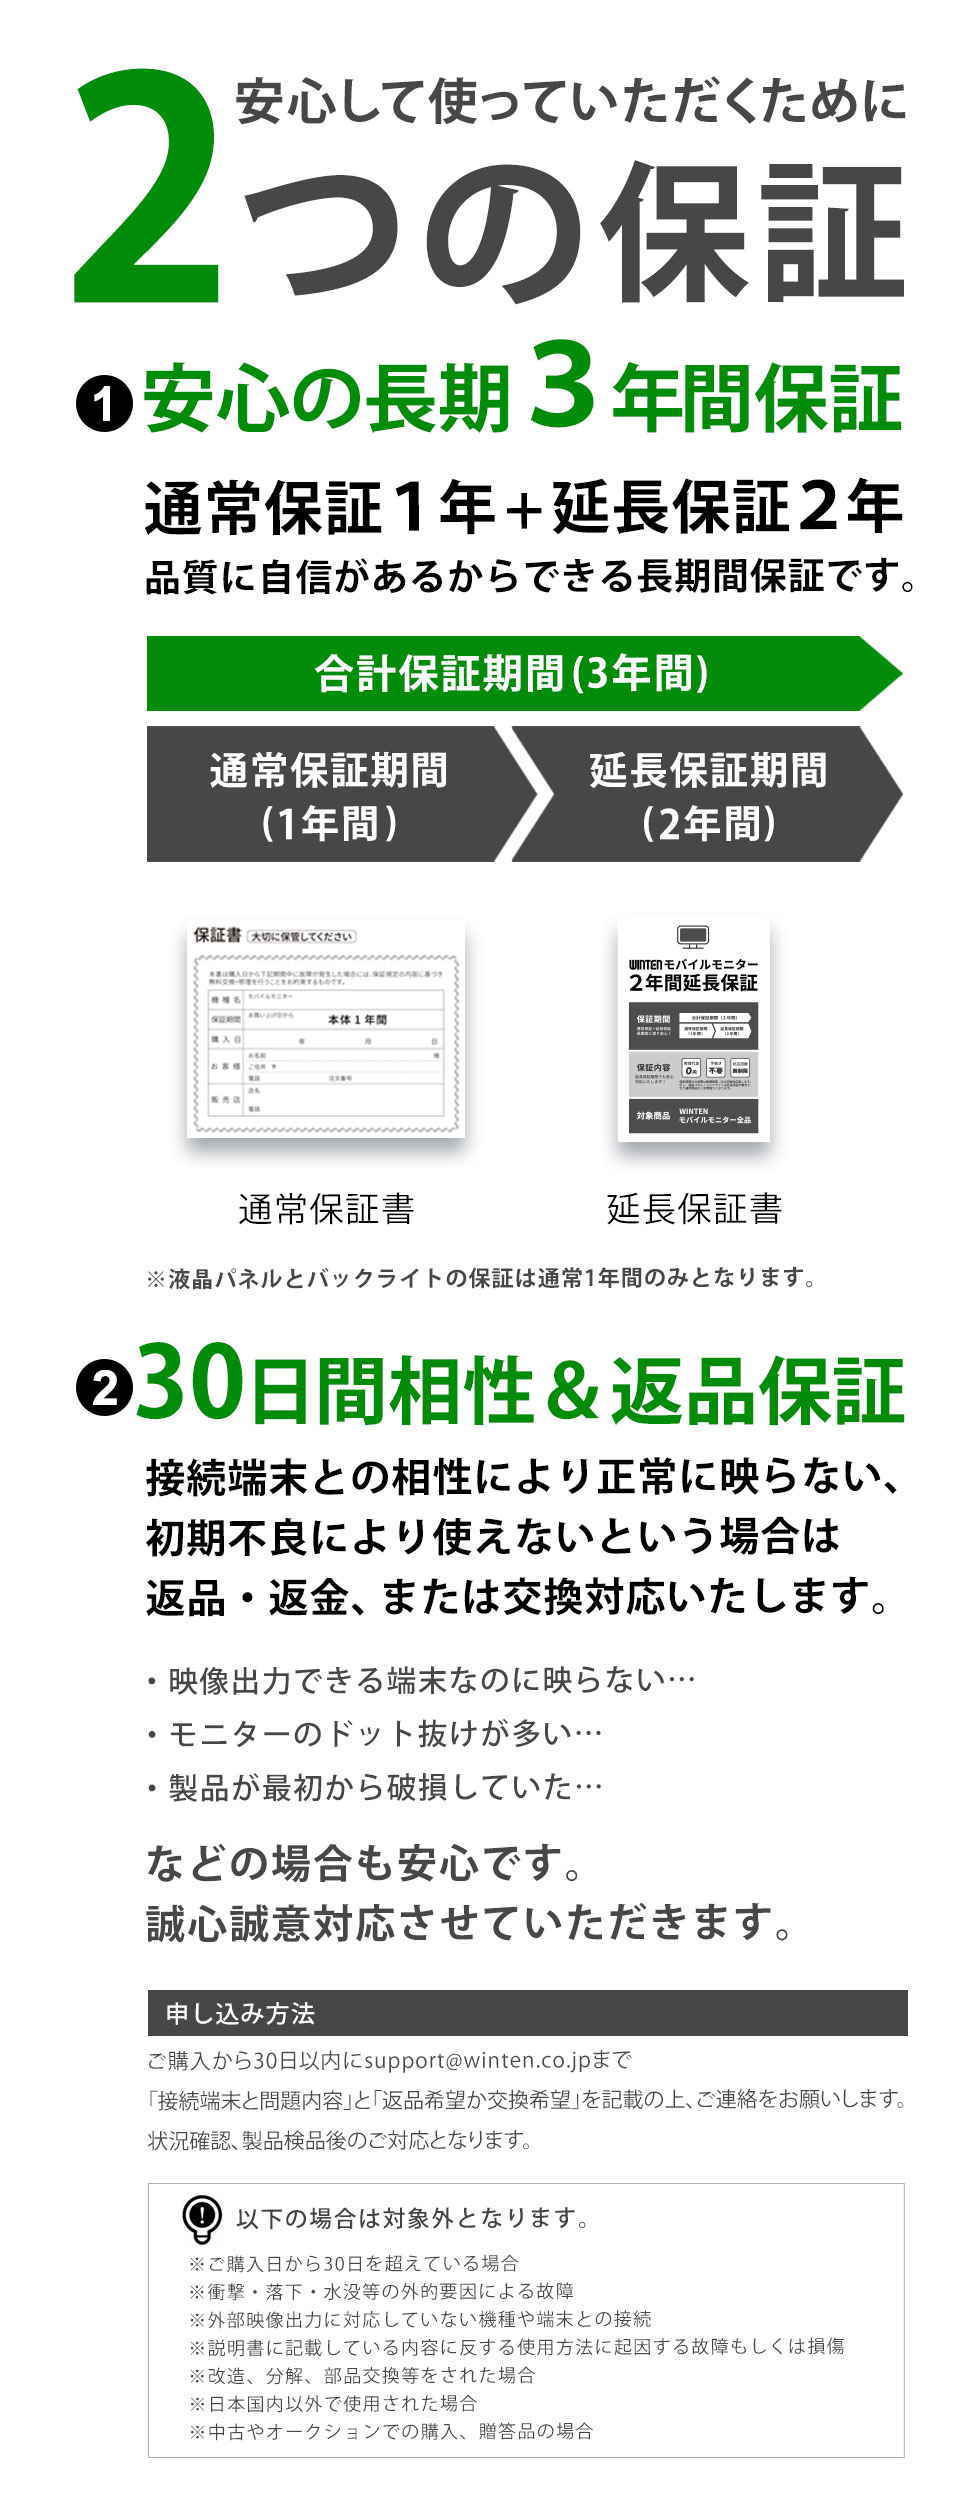  мобильный монитор ge-ming полный HD 15.6 дюймовый дисплей игра non g редкость iPhone PS5 switch 3 год гарантия WT-156H2-BS 5523